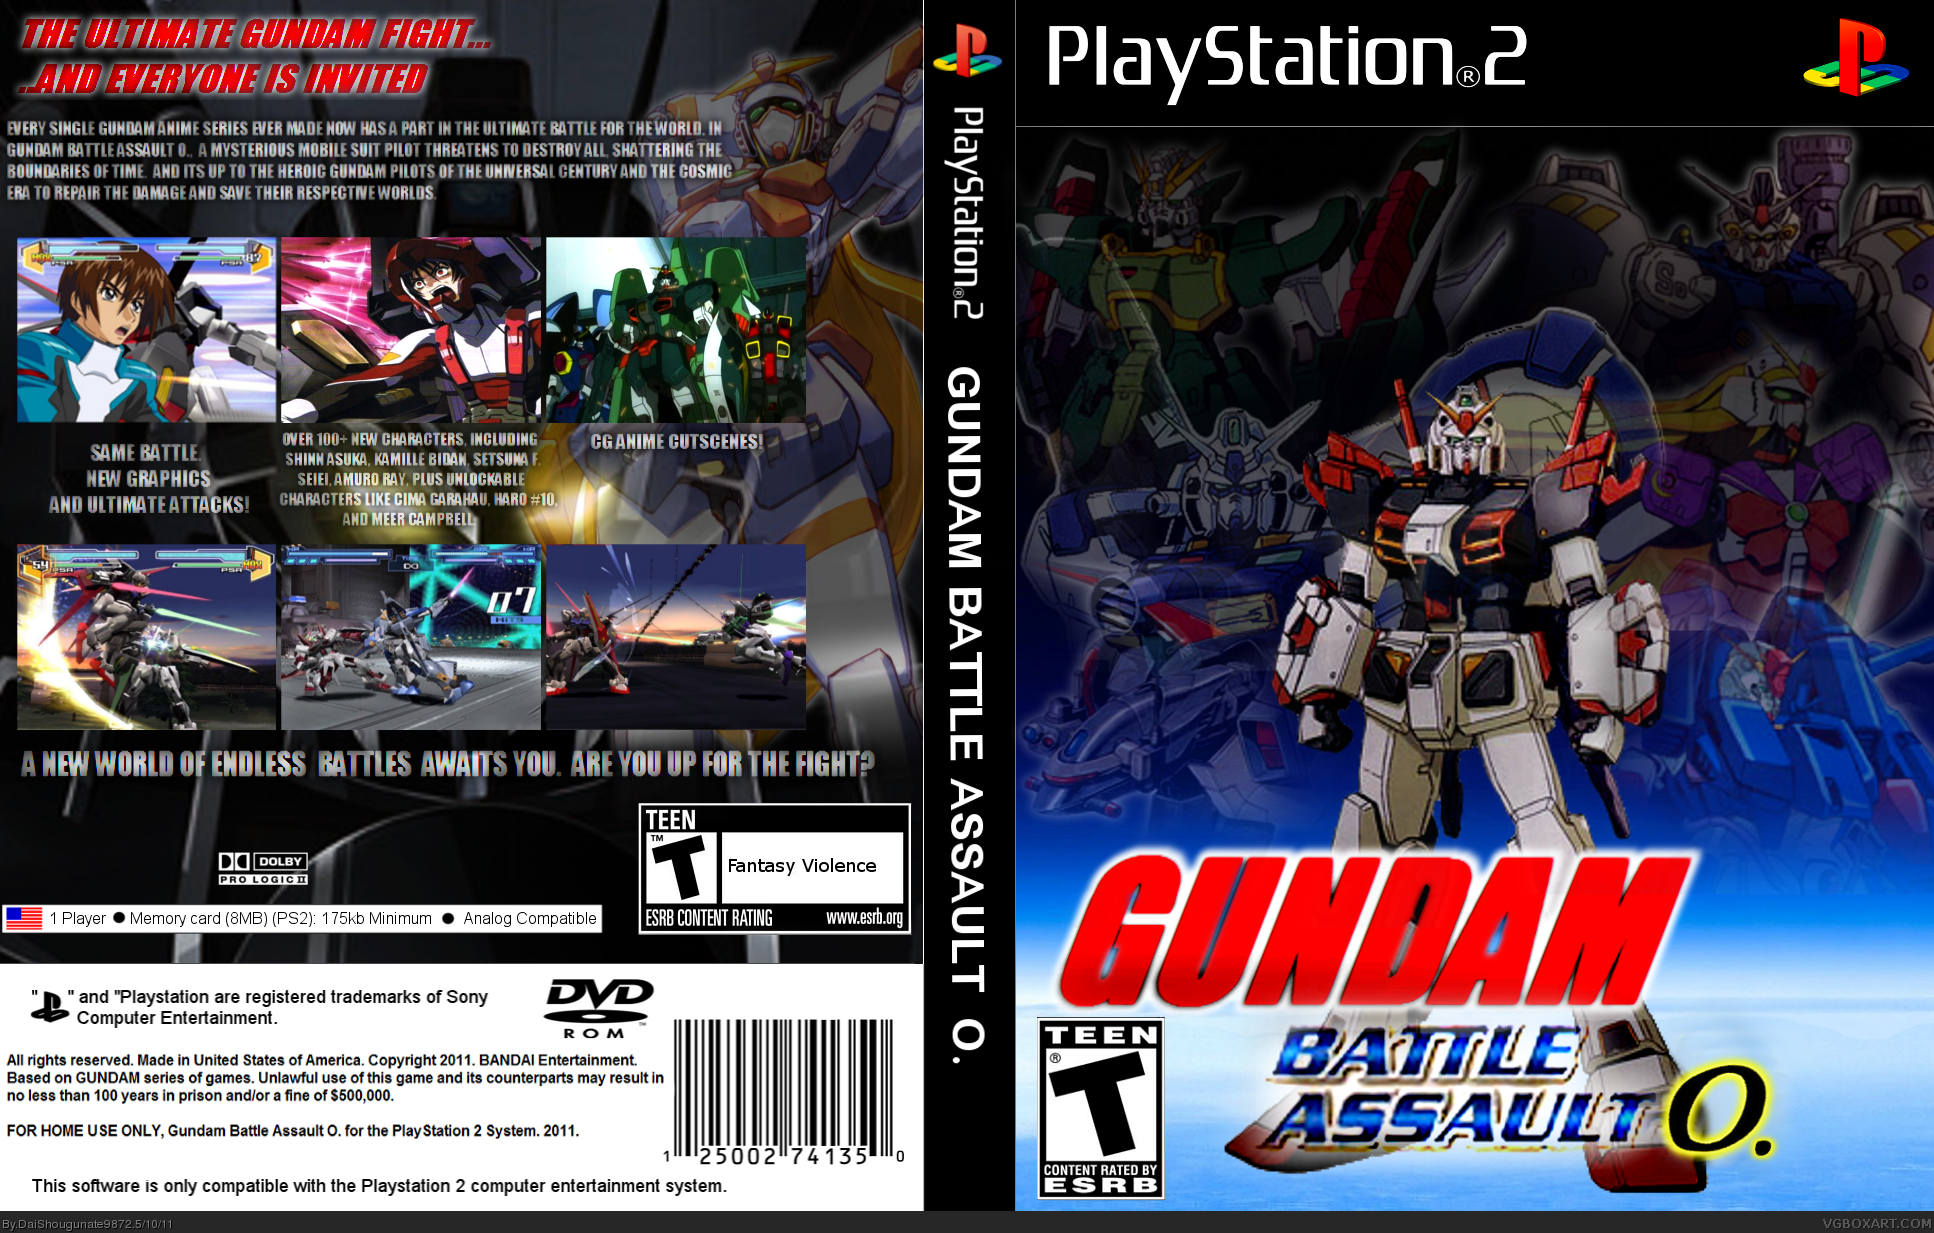 Gundam Battle Assault O. box cover